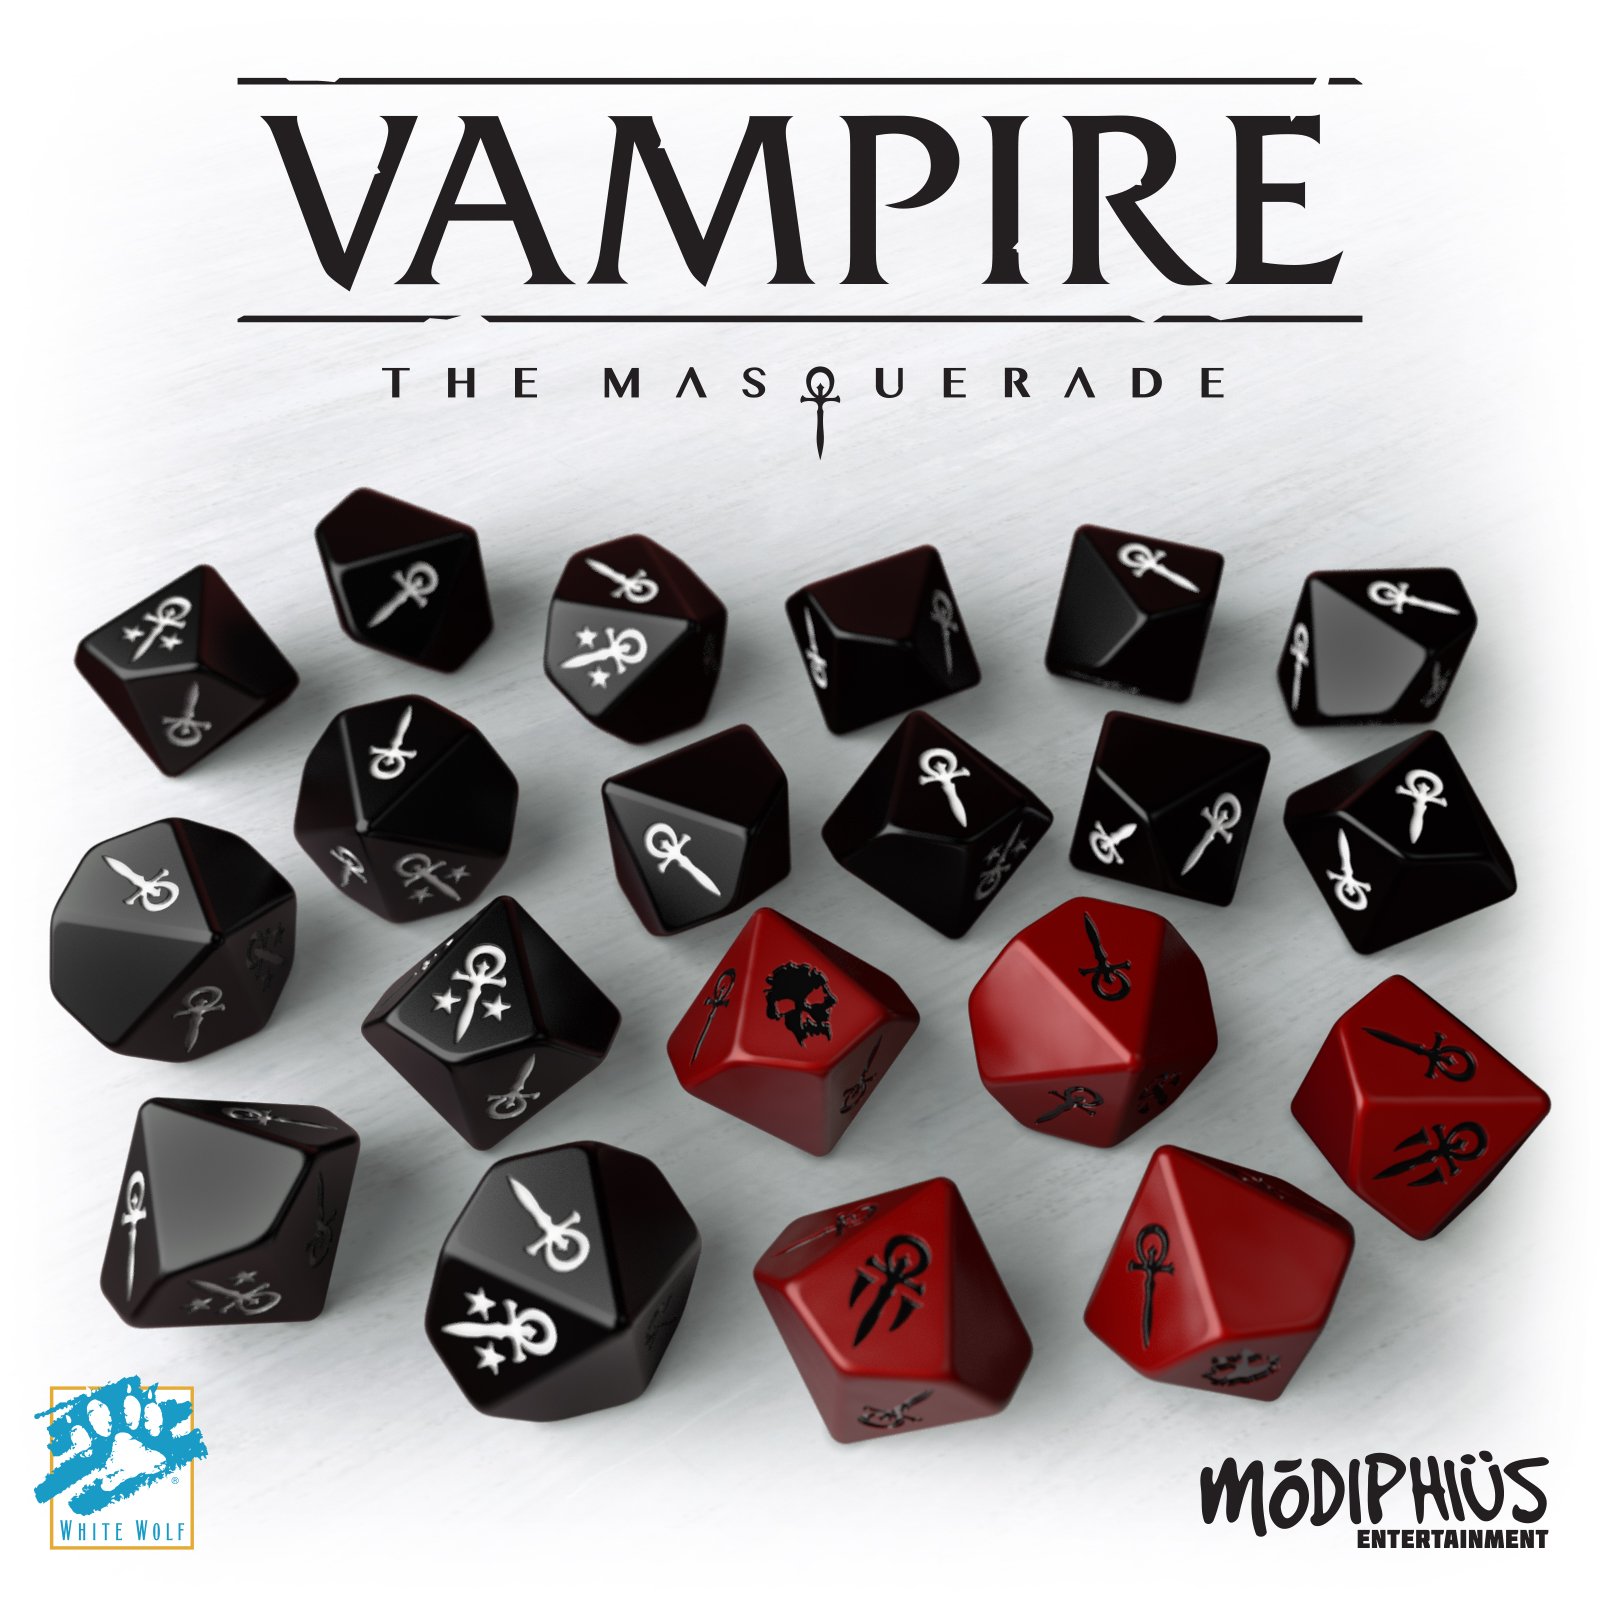 Vampire: The Masquerade, Dice Set - Modiphius Entertainment